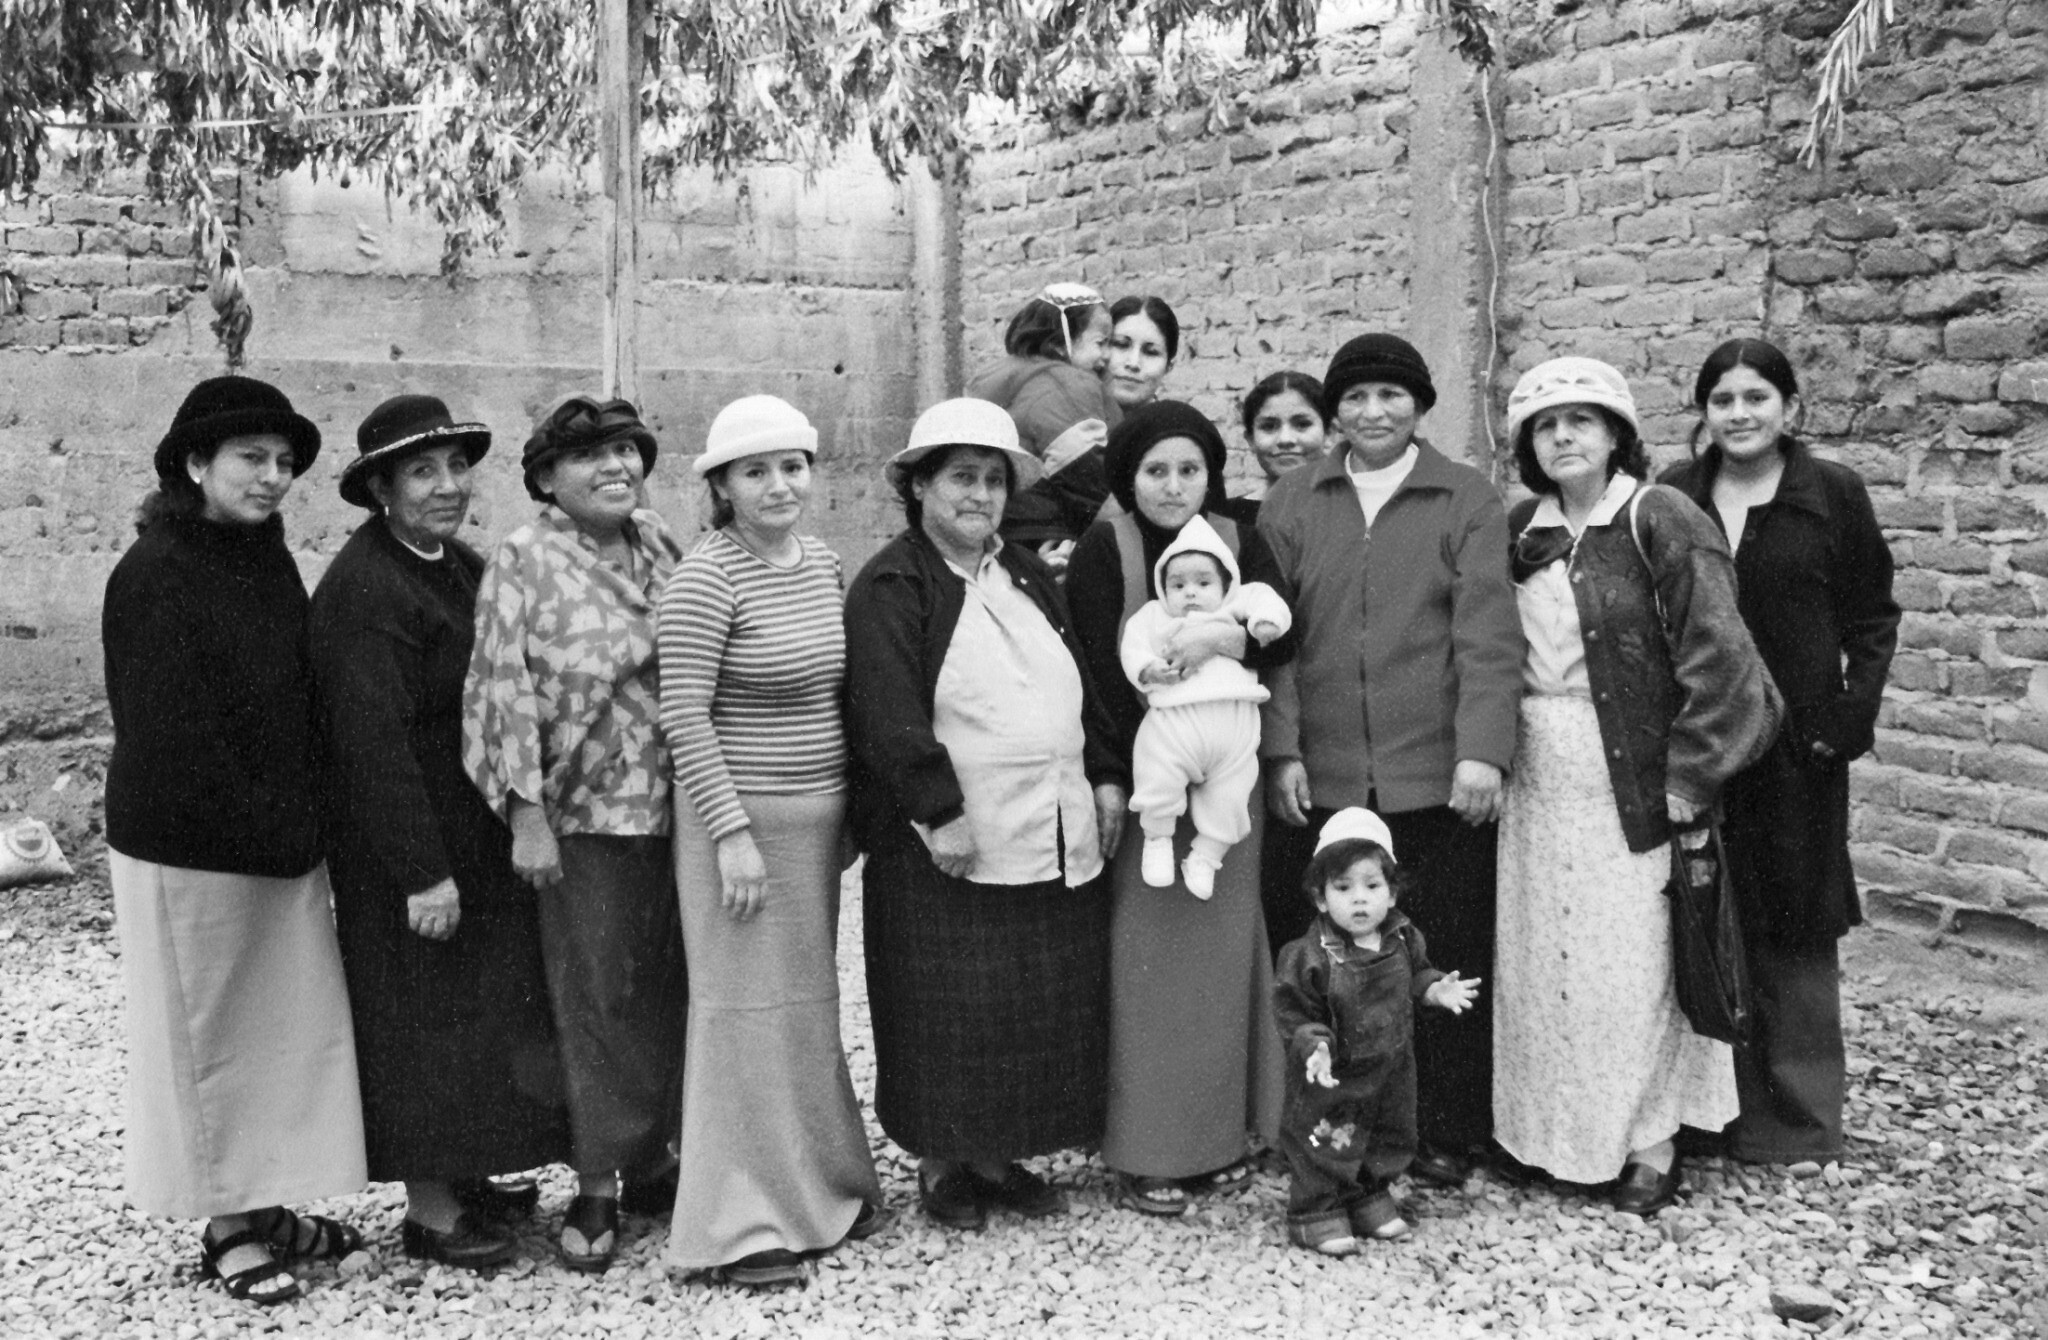 Des femmes de la communauté des Juifs incas à la synagogue El Milagro de Trujillo, au Pérou, en 2004. (Autorisation :  Graciela Mochkofsky)